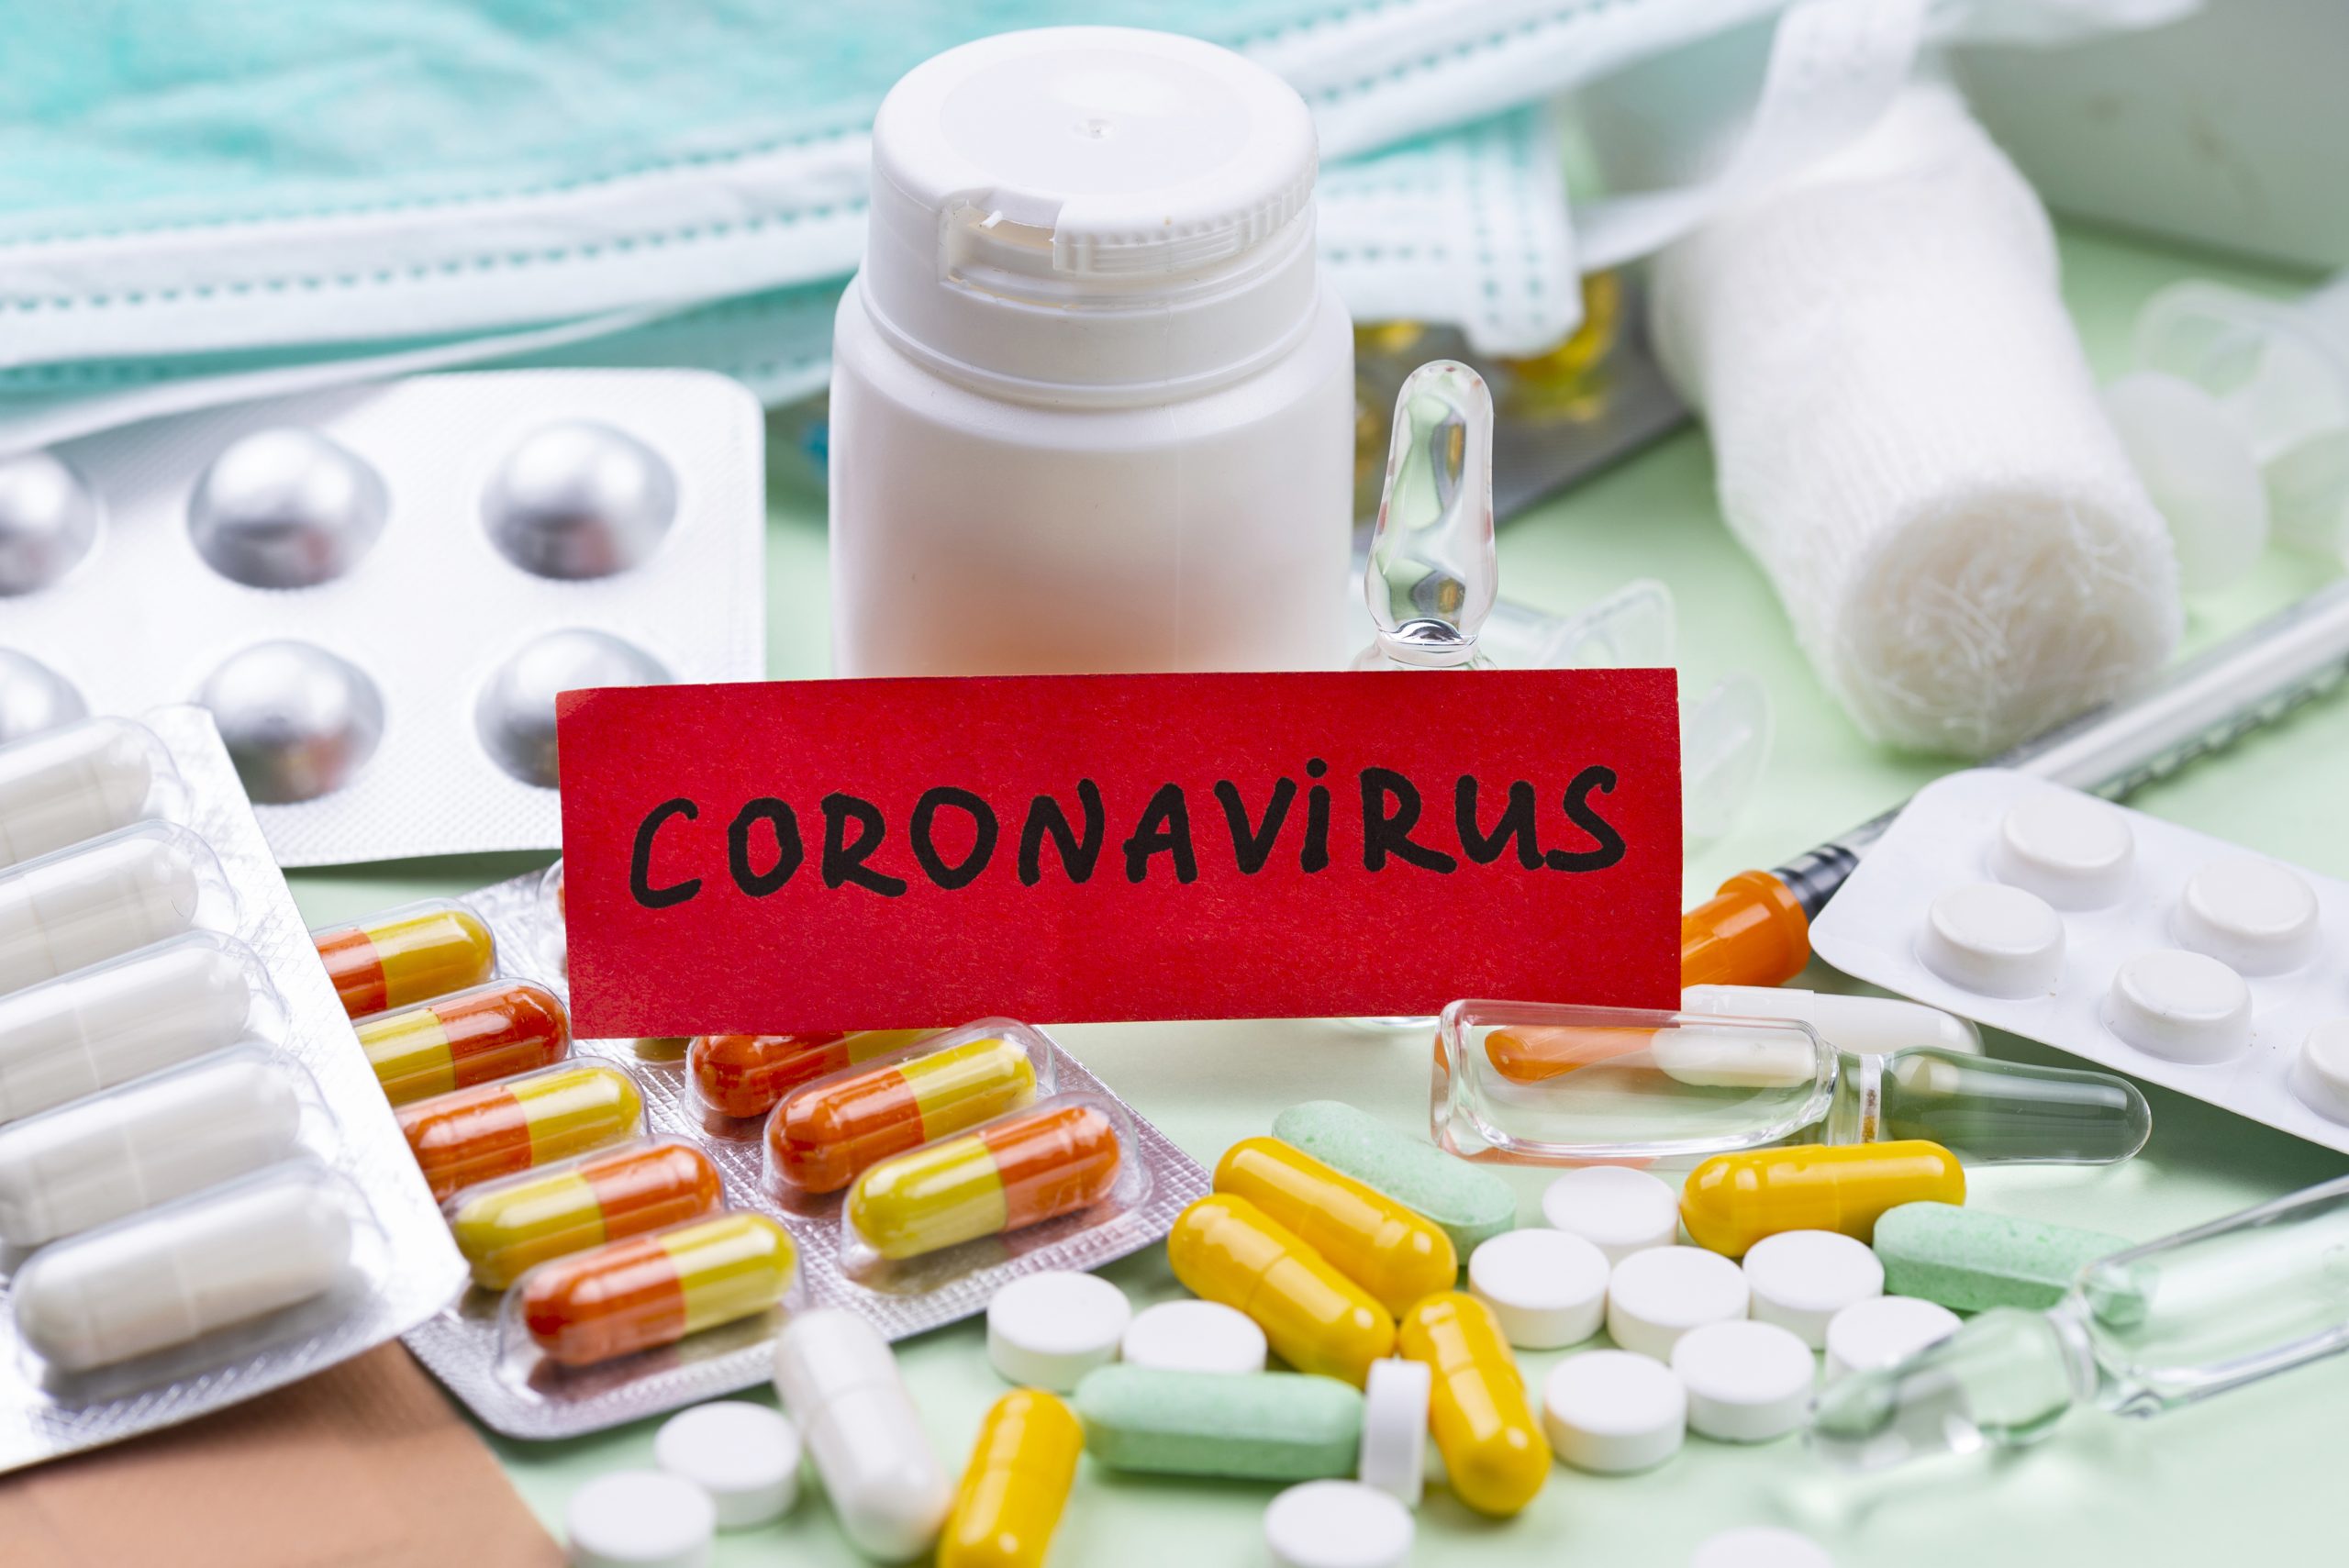 Corticosteroids for COVID-19